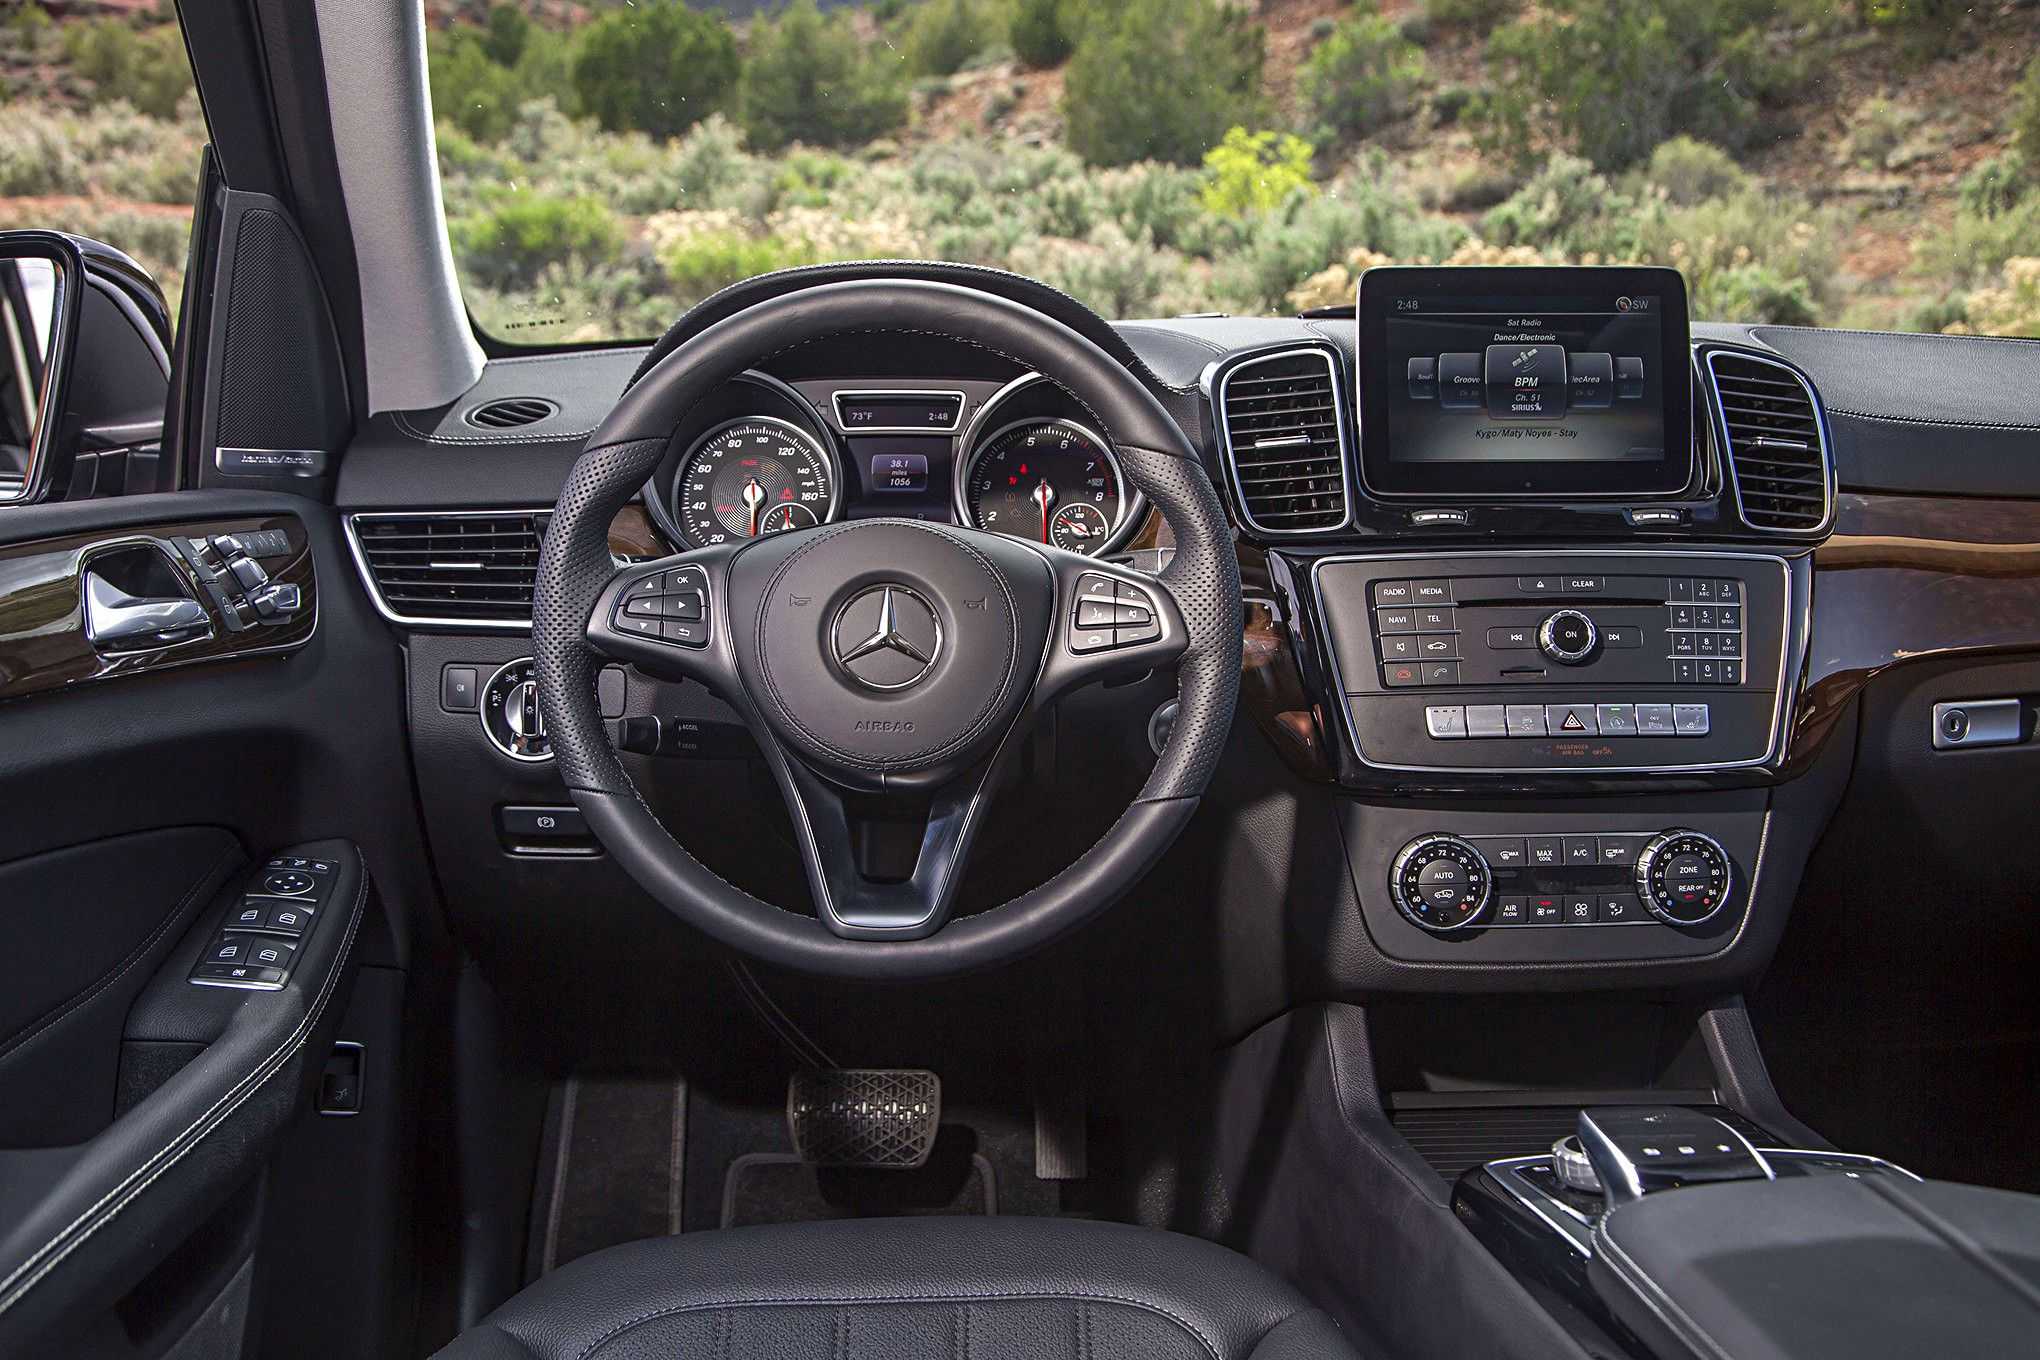 Mercedes-benz gls 2019-2020 - фото и цена модели, комплектация, характеристики мерседес gls